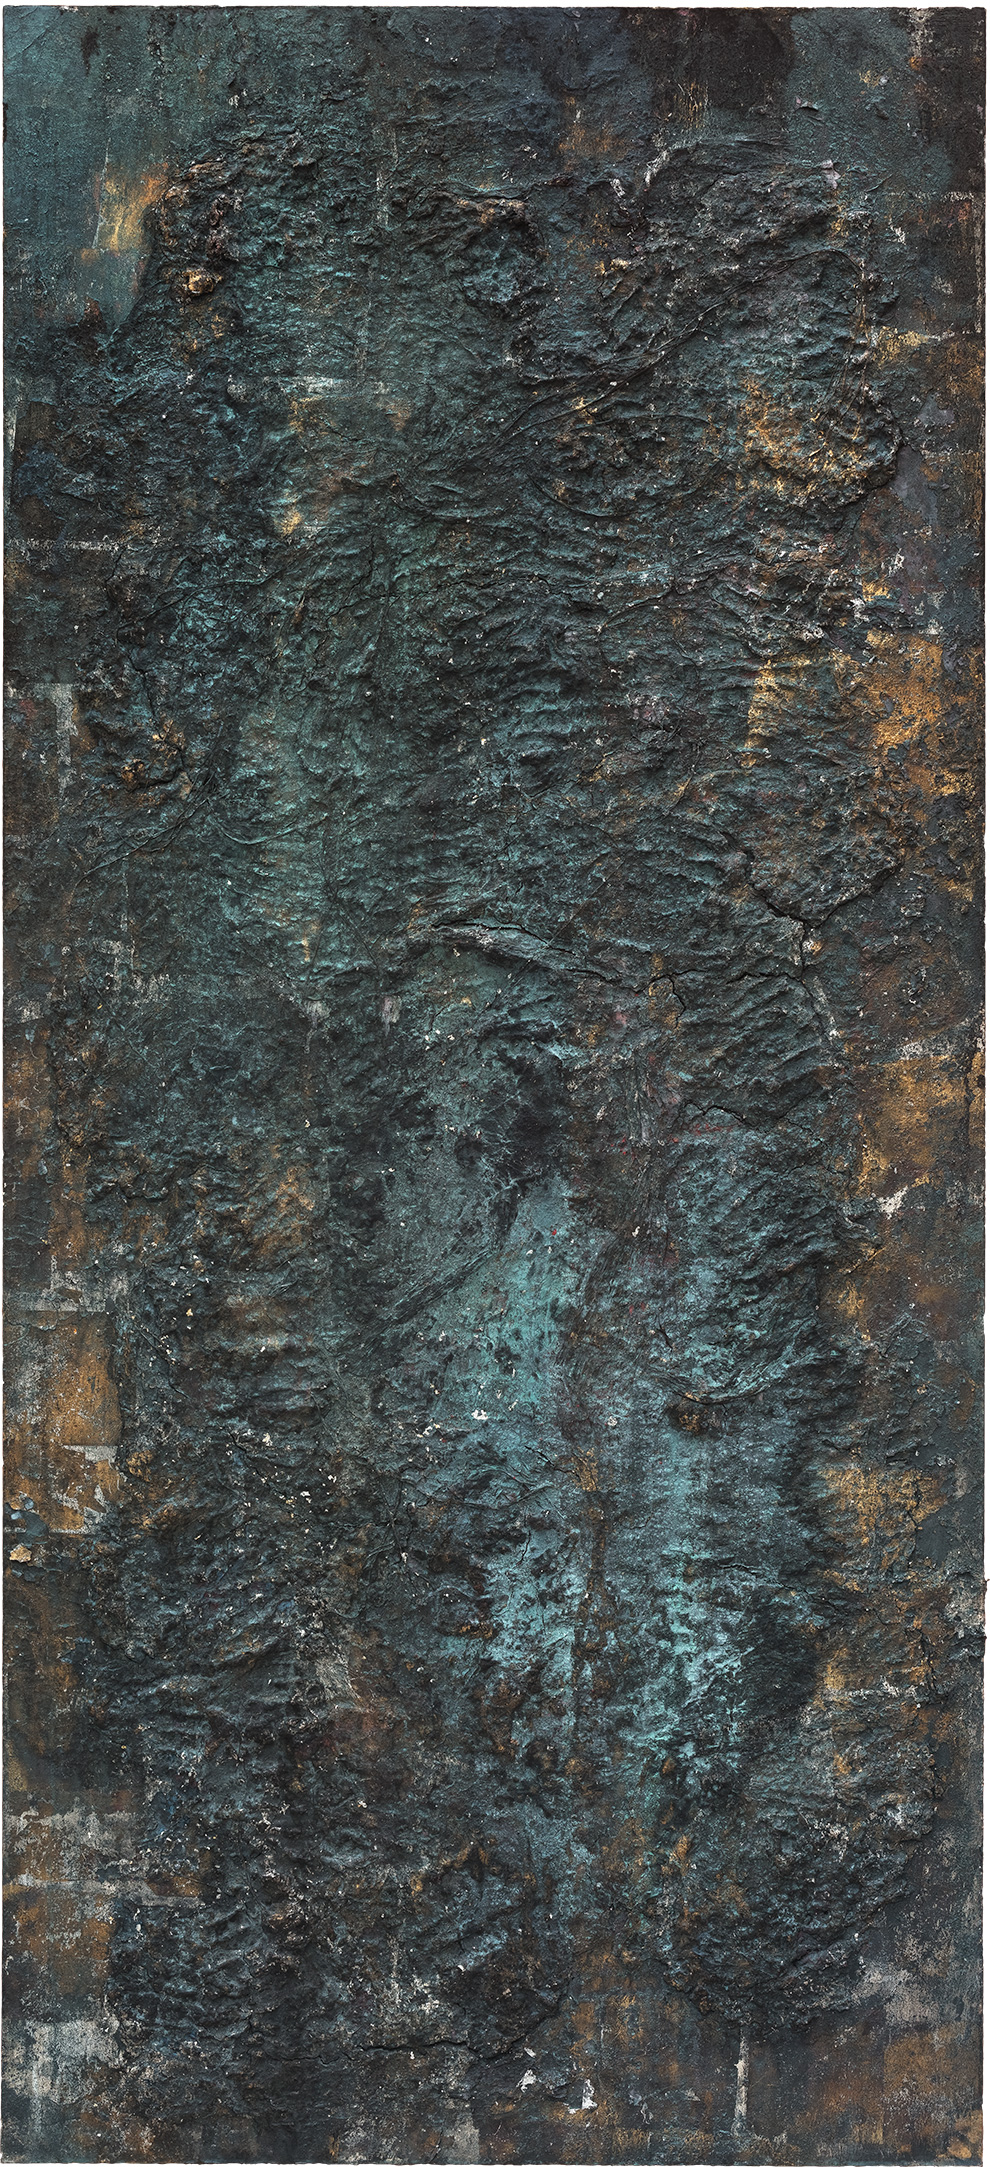 《书卷》二十九-190x80cm--木质构造、麻纸、矿物·植物·土质颜料-、金银粉、金属渣、箔--2018年.jpg